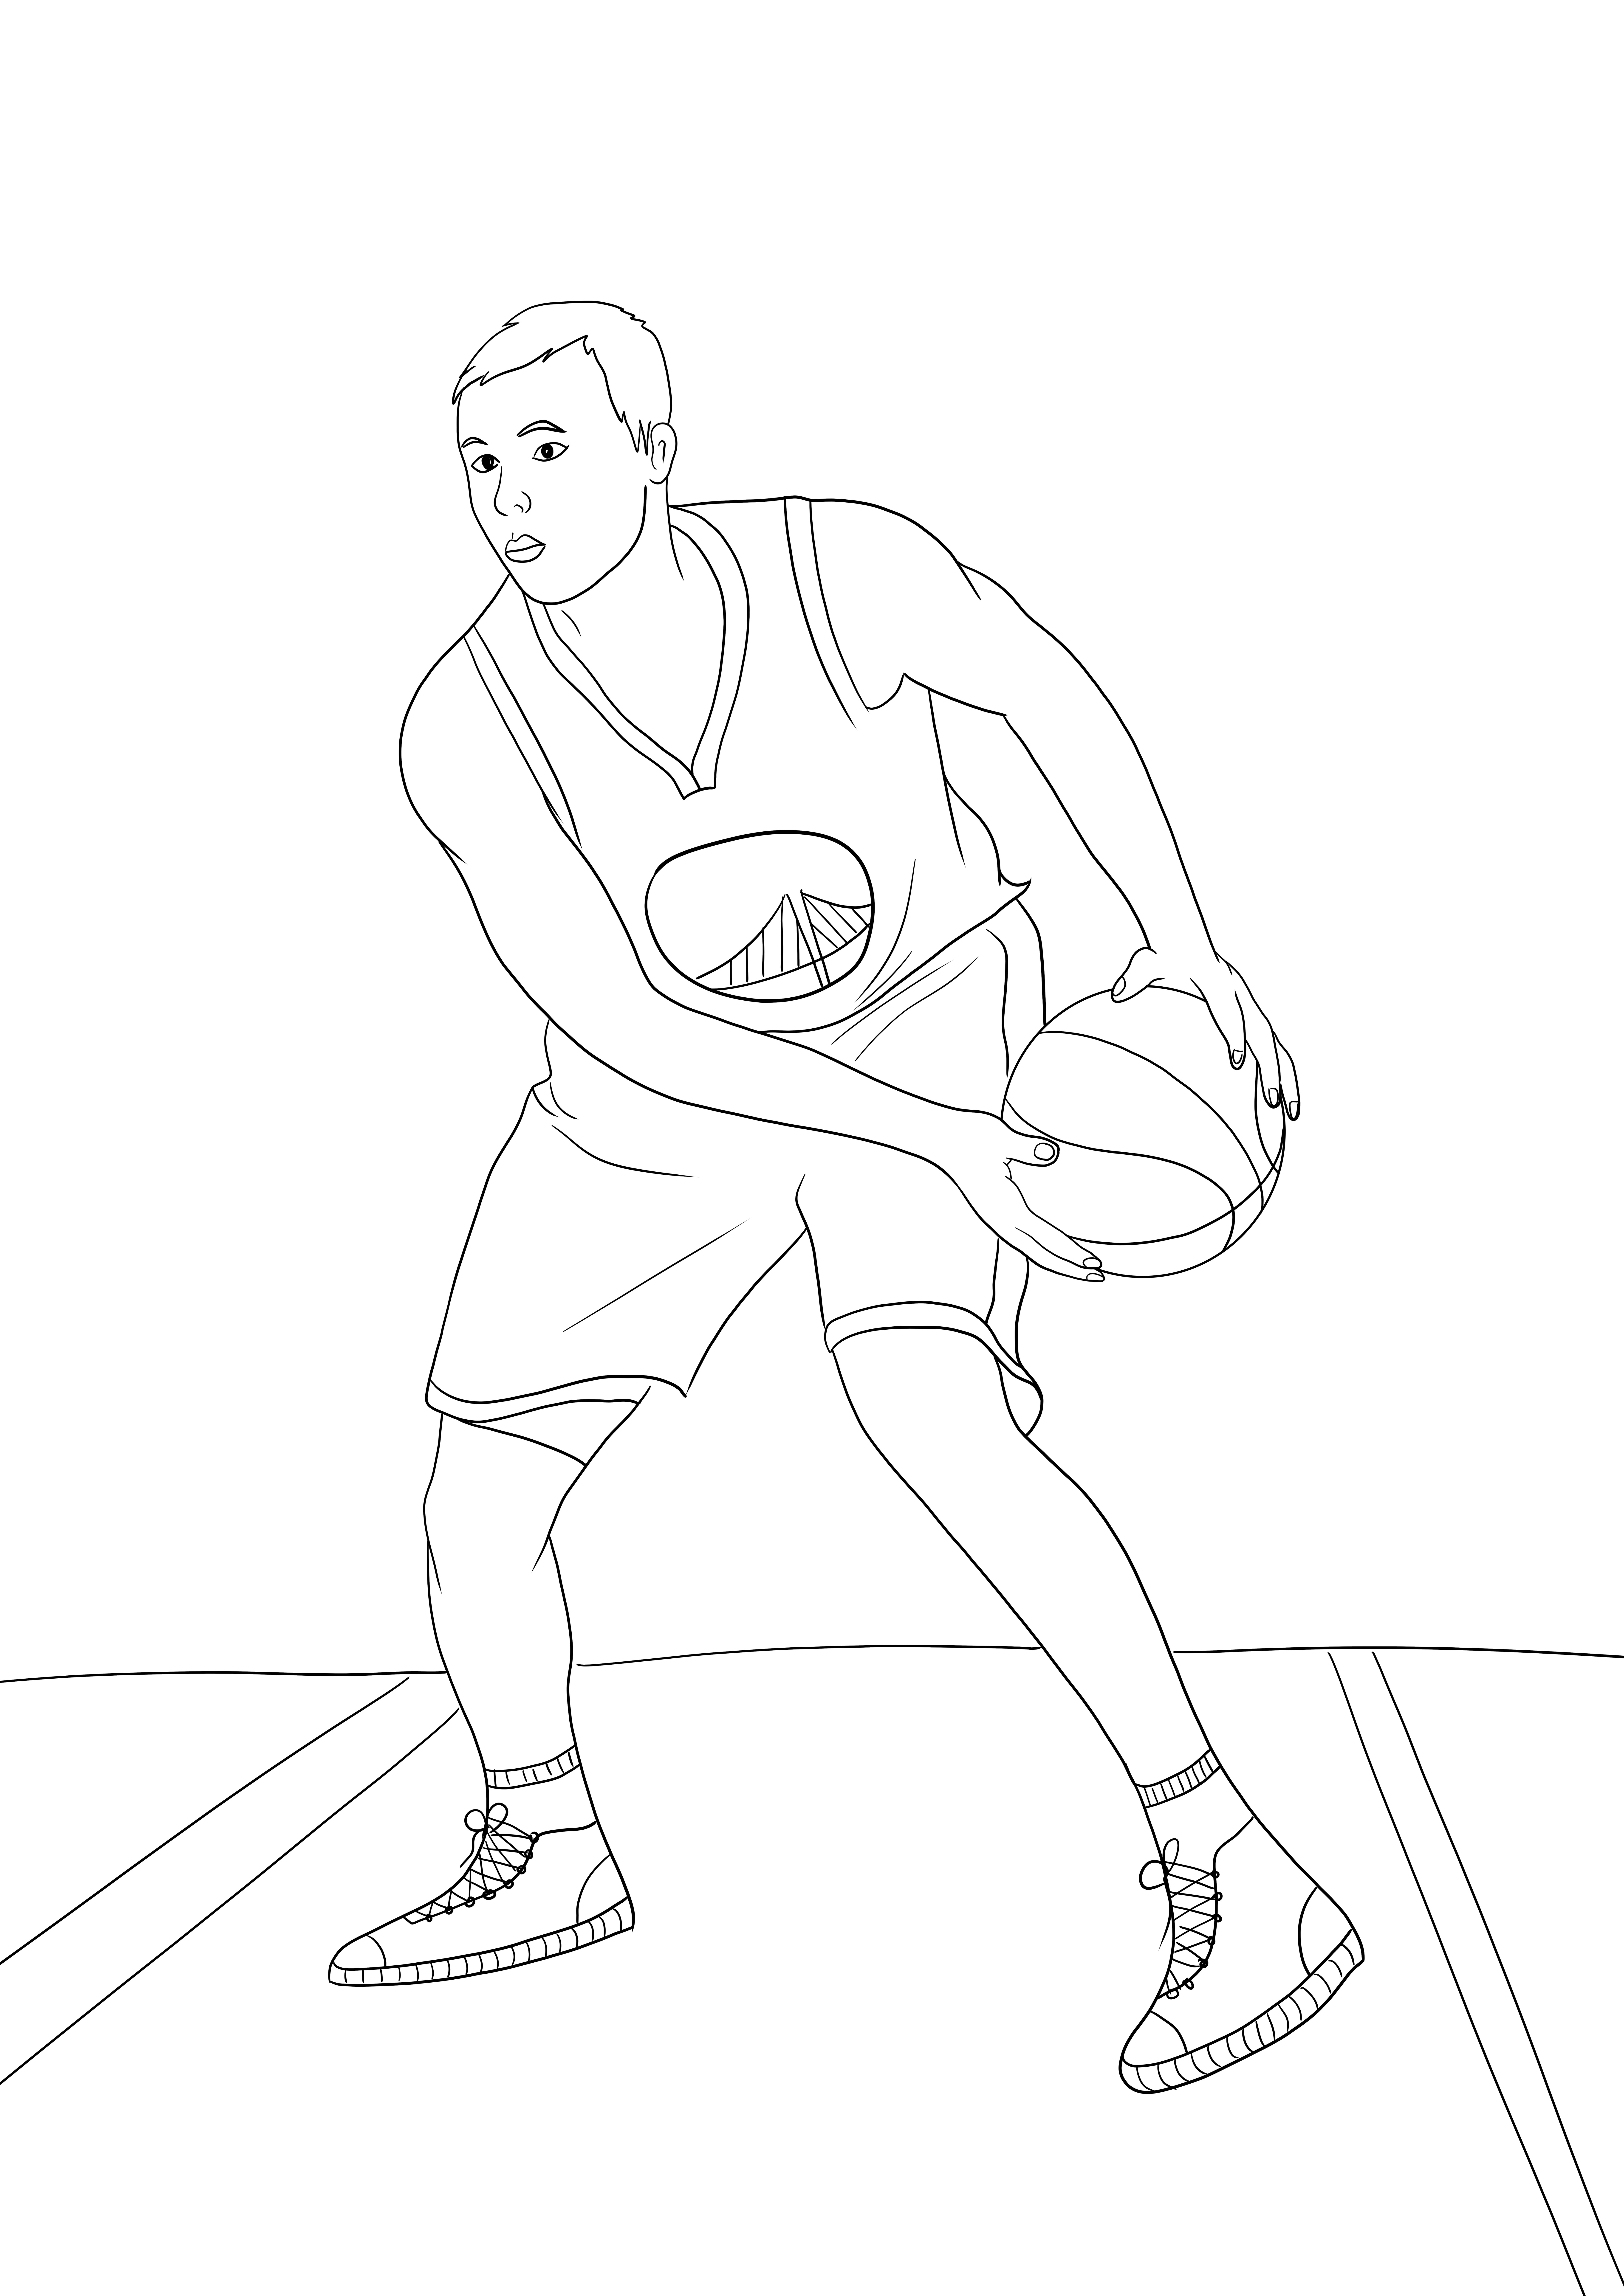 Stephen Curry da NBA colorir simples e imagem para download gratuito